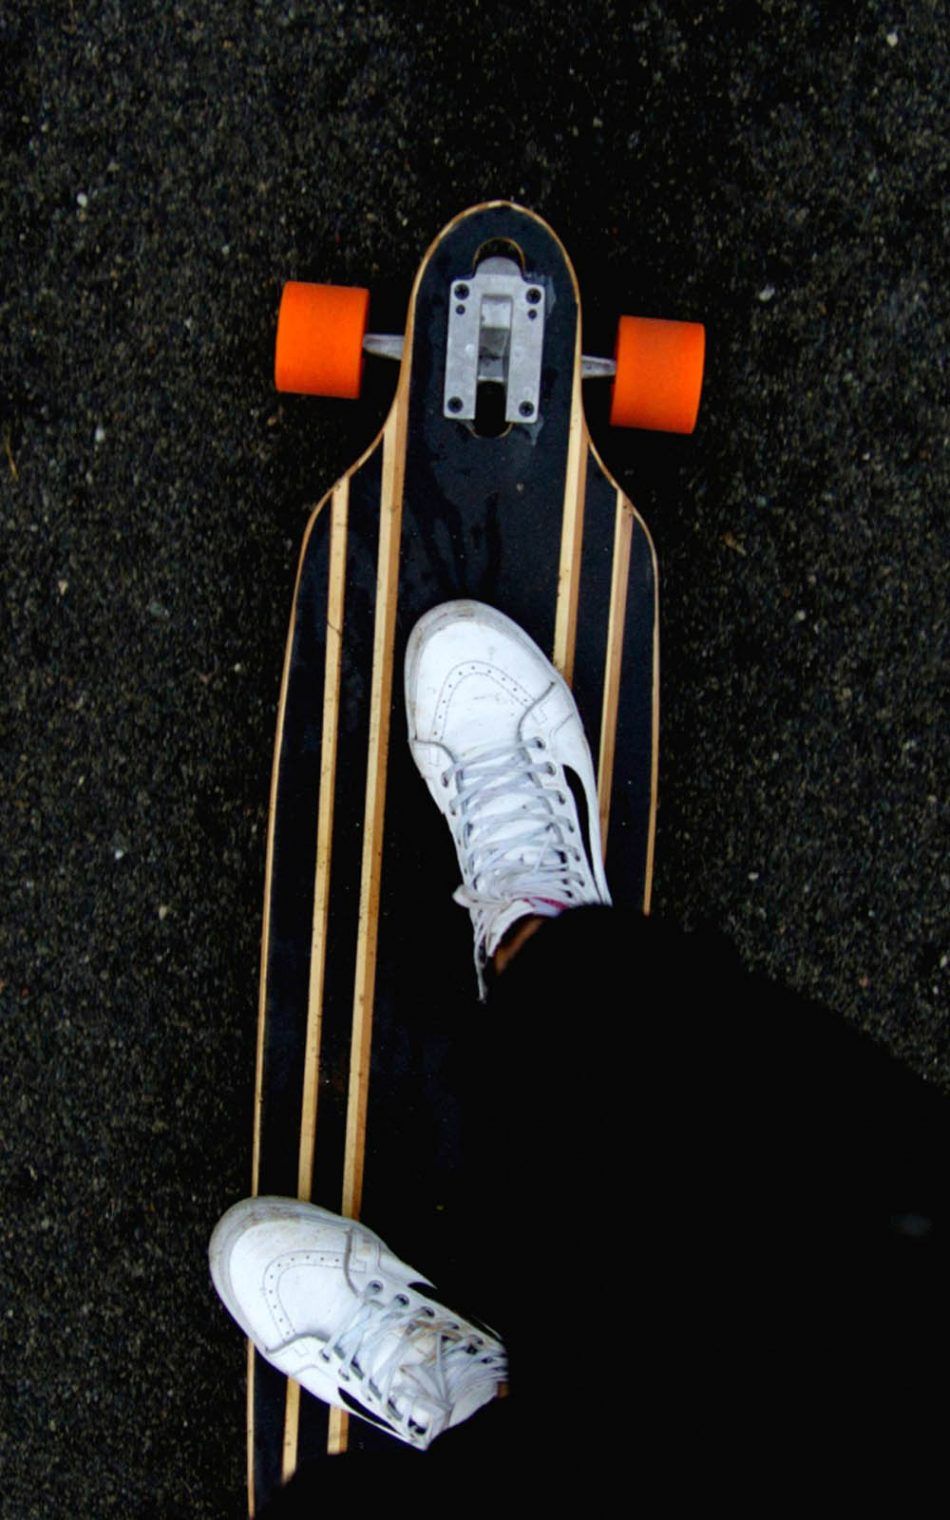 Skateboard Sneakers 4K Ultra HD Mobile Wallpaper